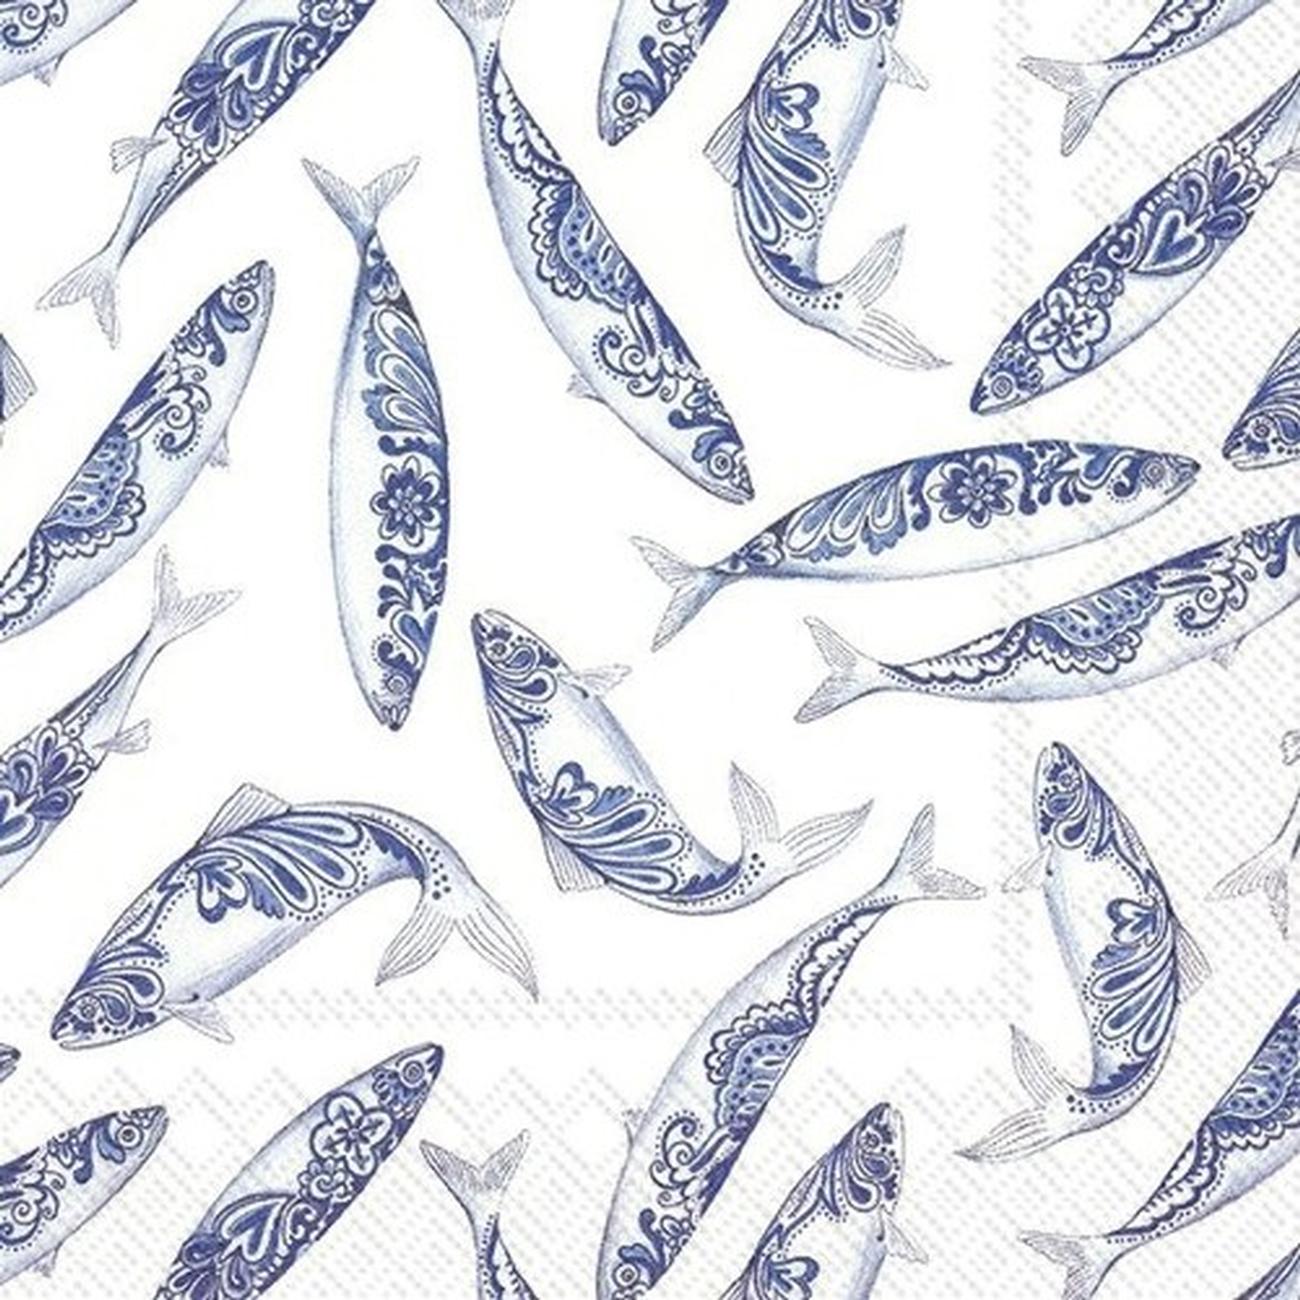 ihr-decorative-fish-white-lunch-napkins - IHR Lunch Napkins Decorative Fish White 